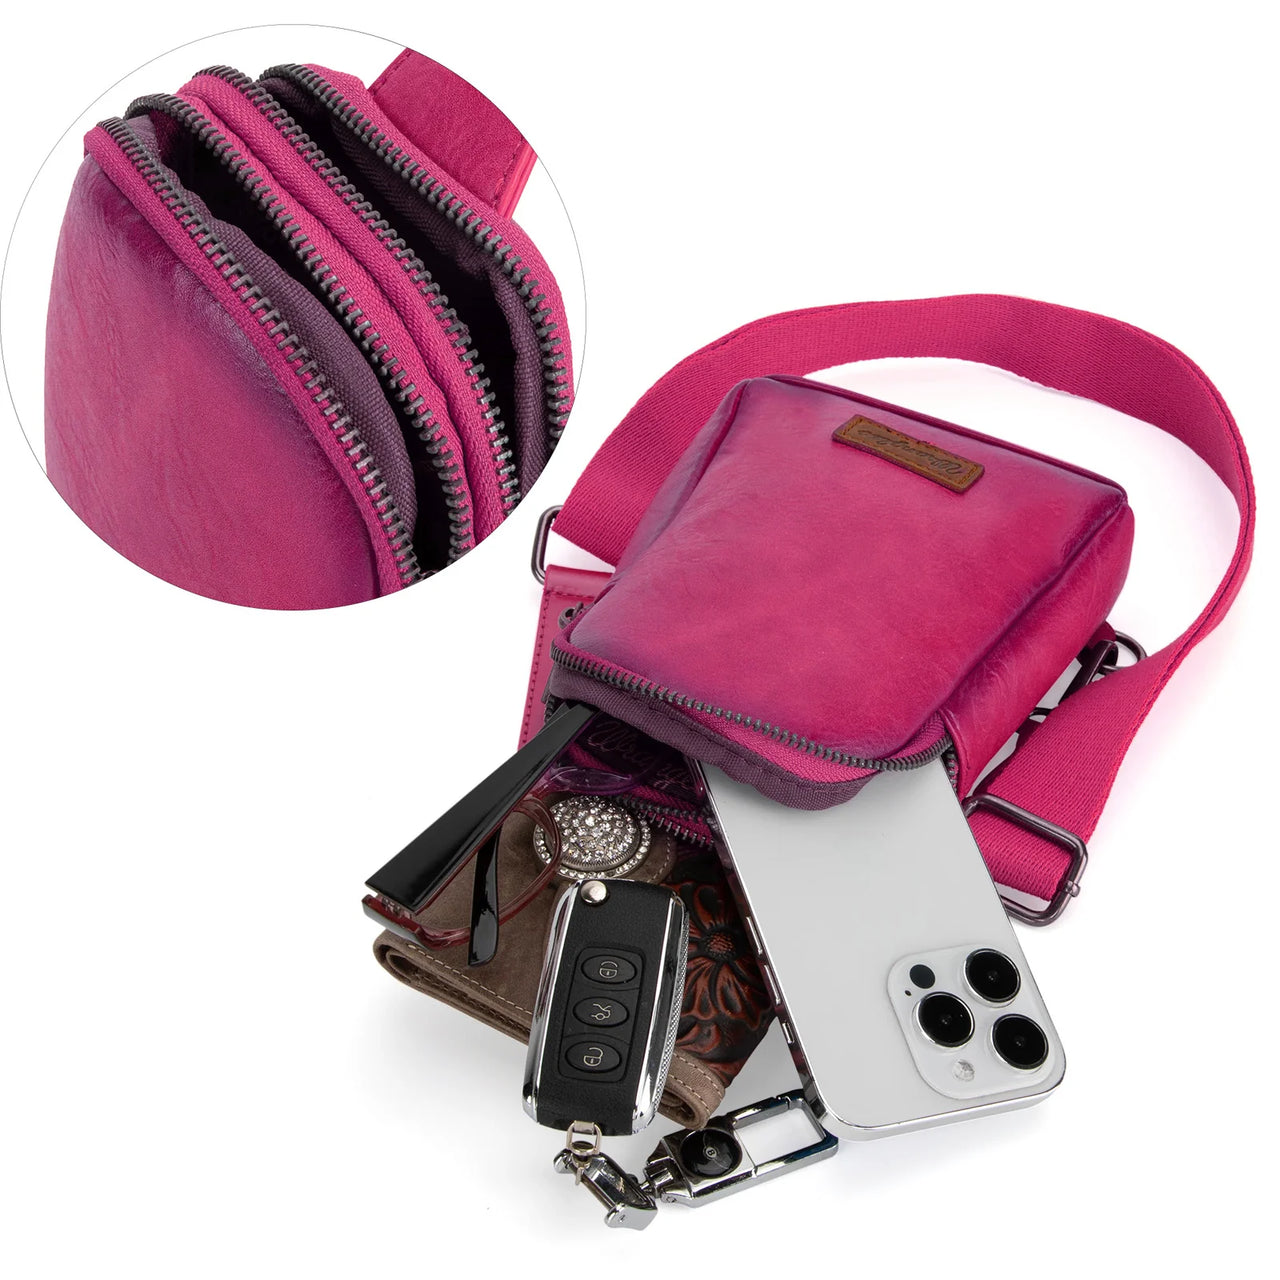 Wrangler Women's Sling Bag/Crossbody/Chest Bag - Hot Pink (A)